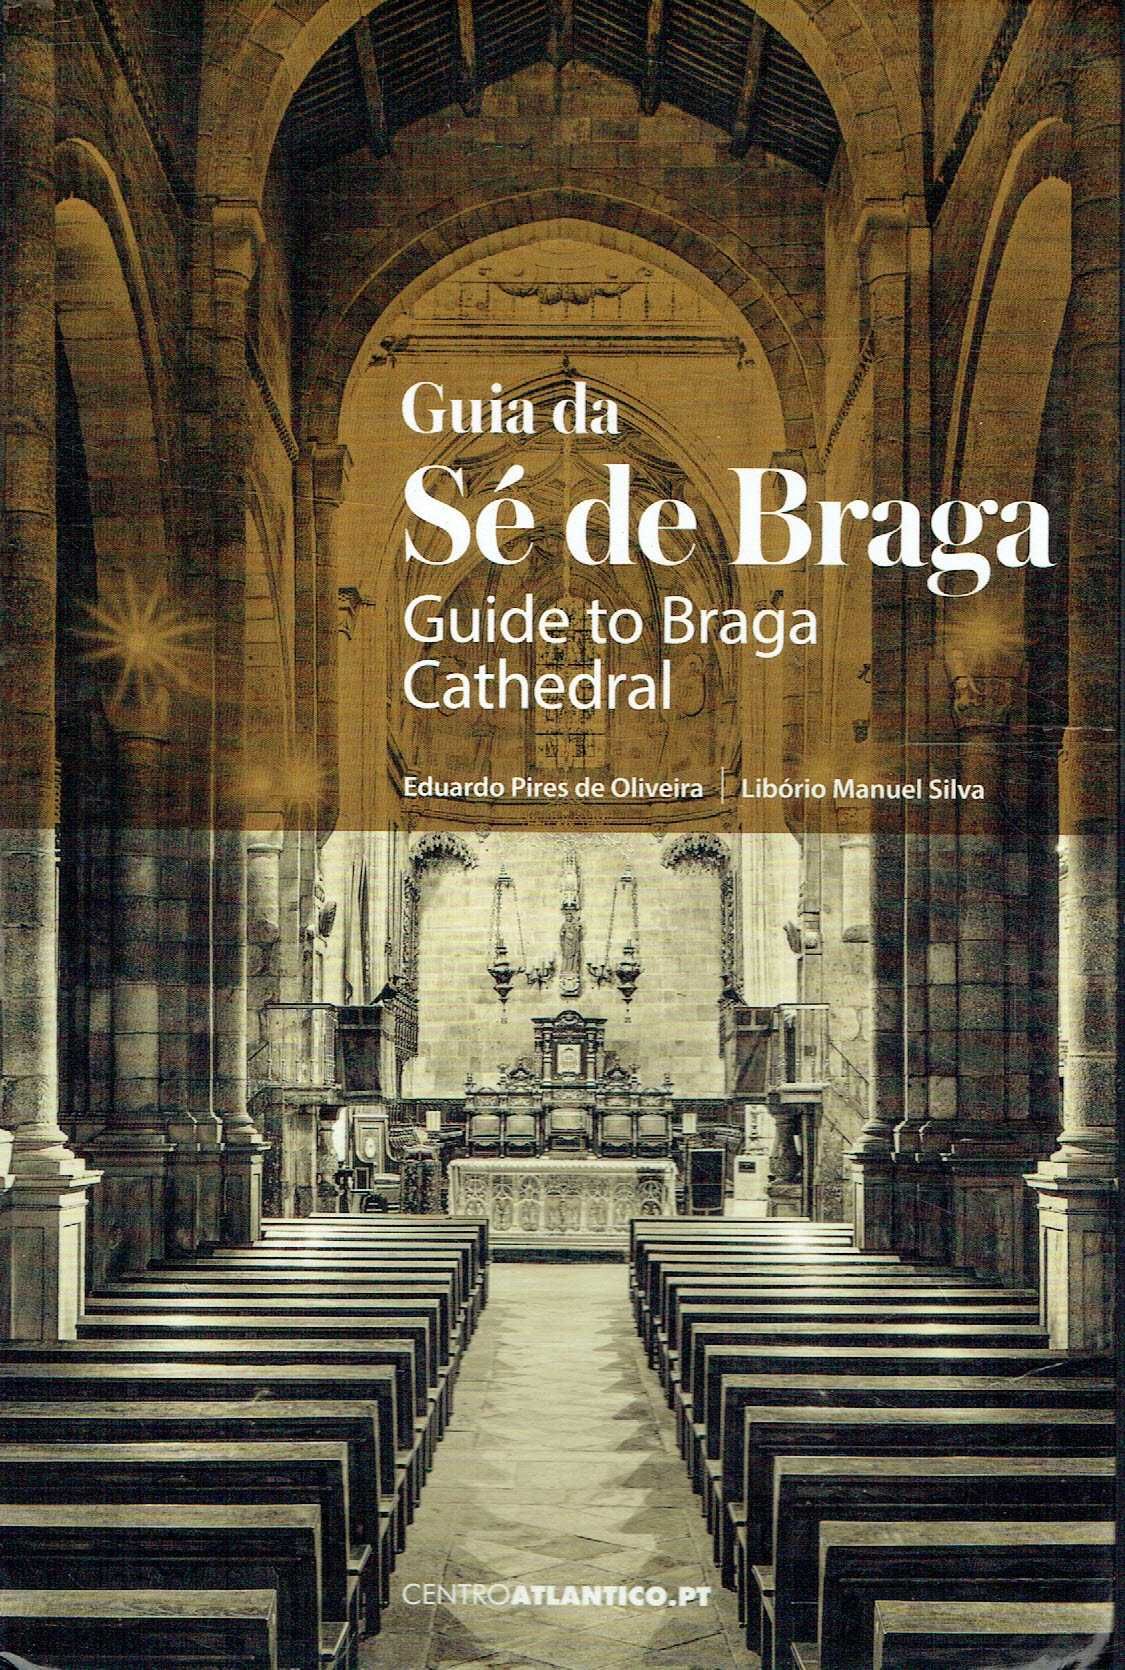 878

Guia da Sé de Braga
de Libório Manuel Silva